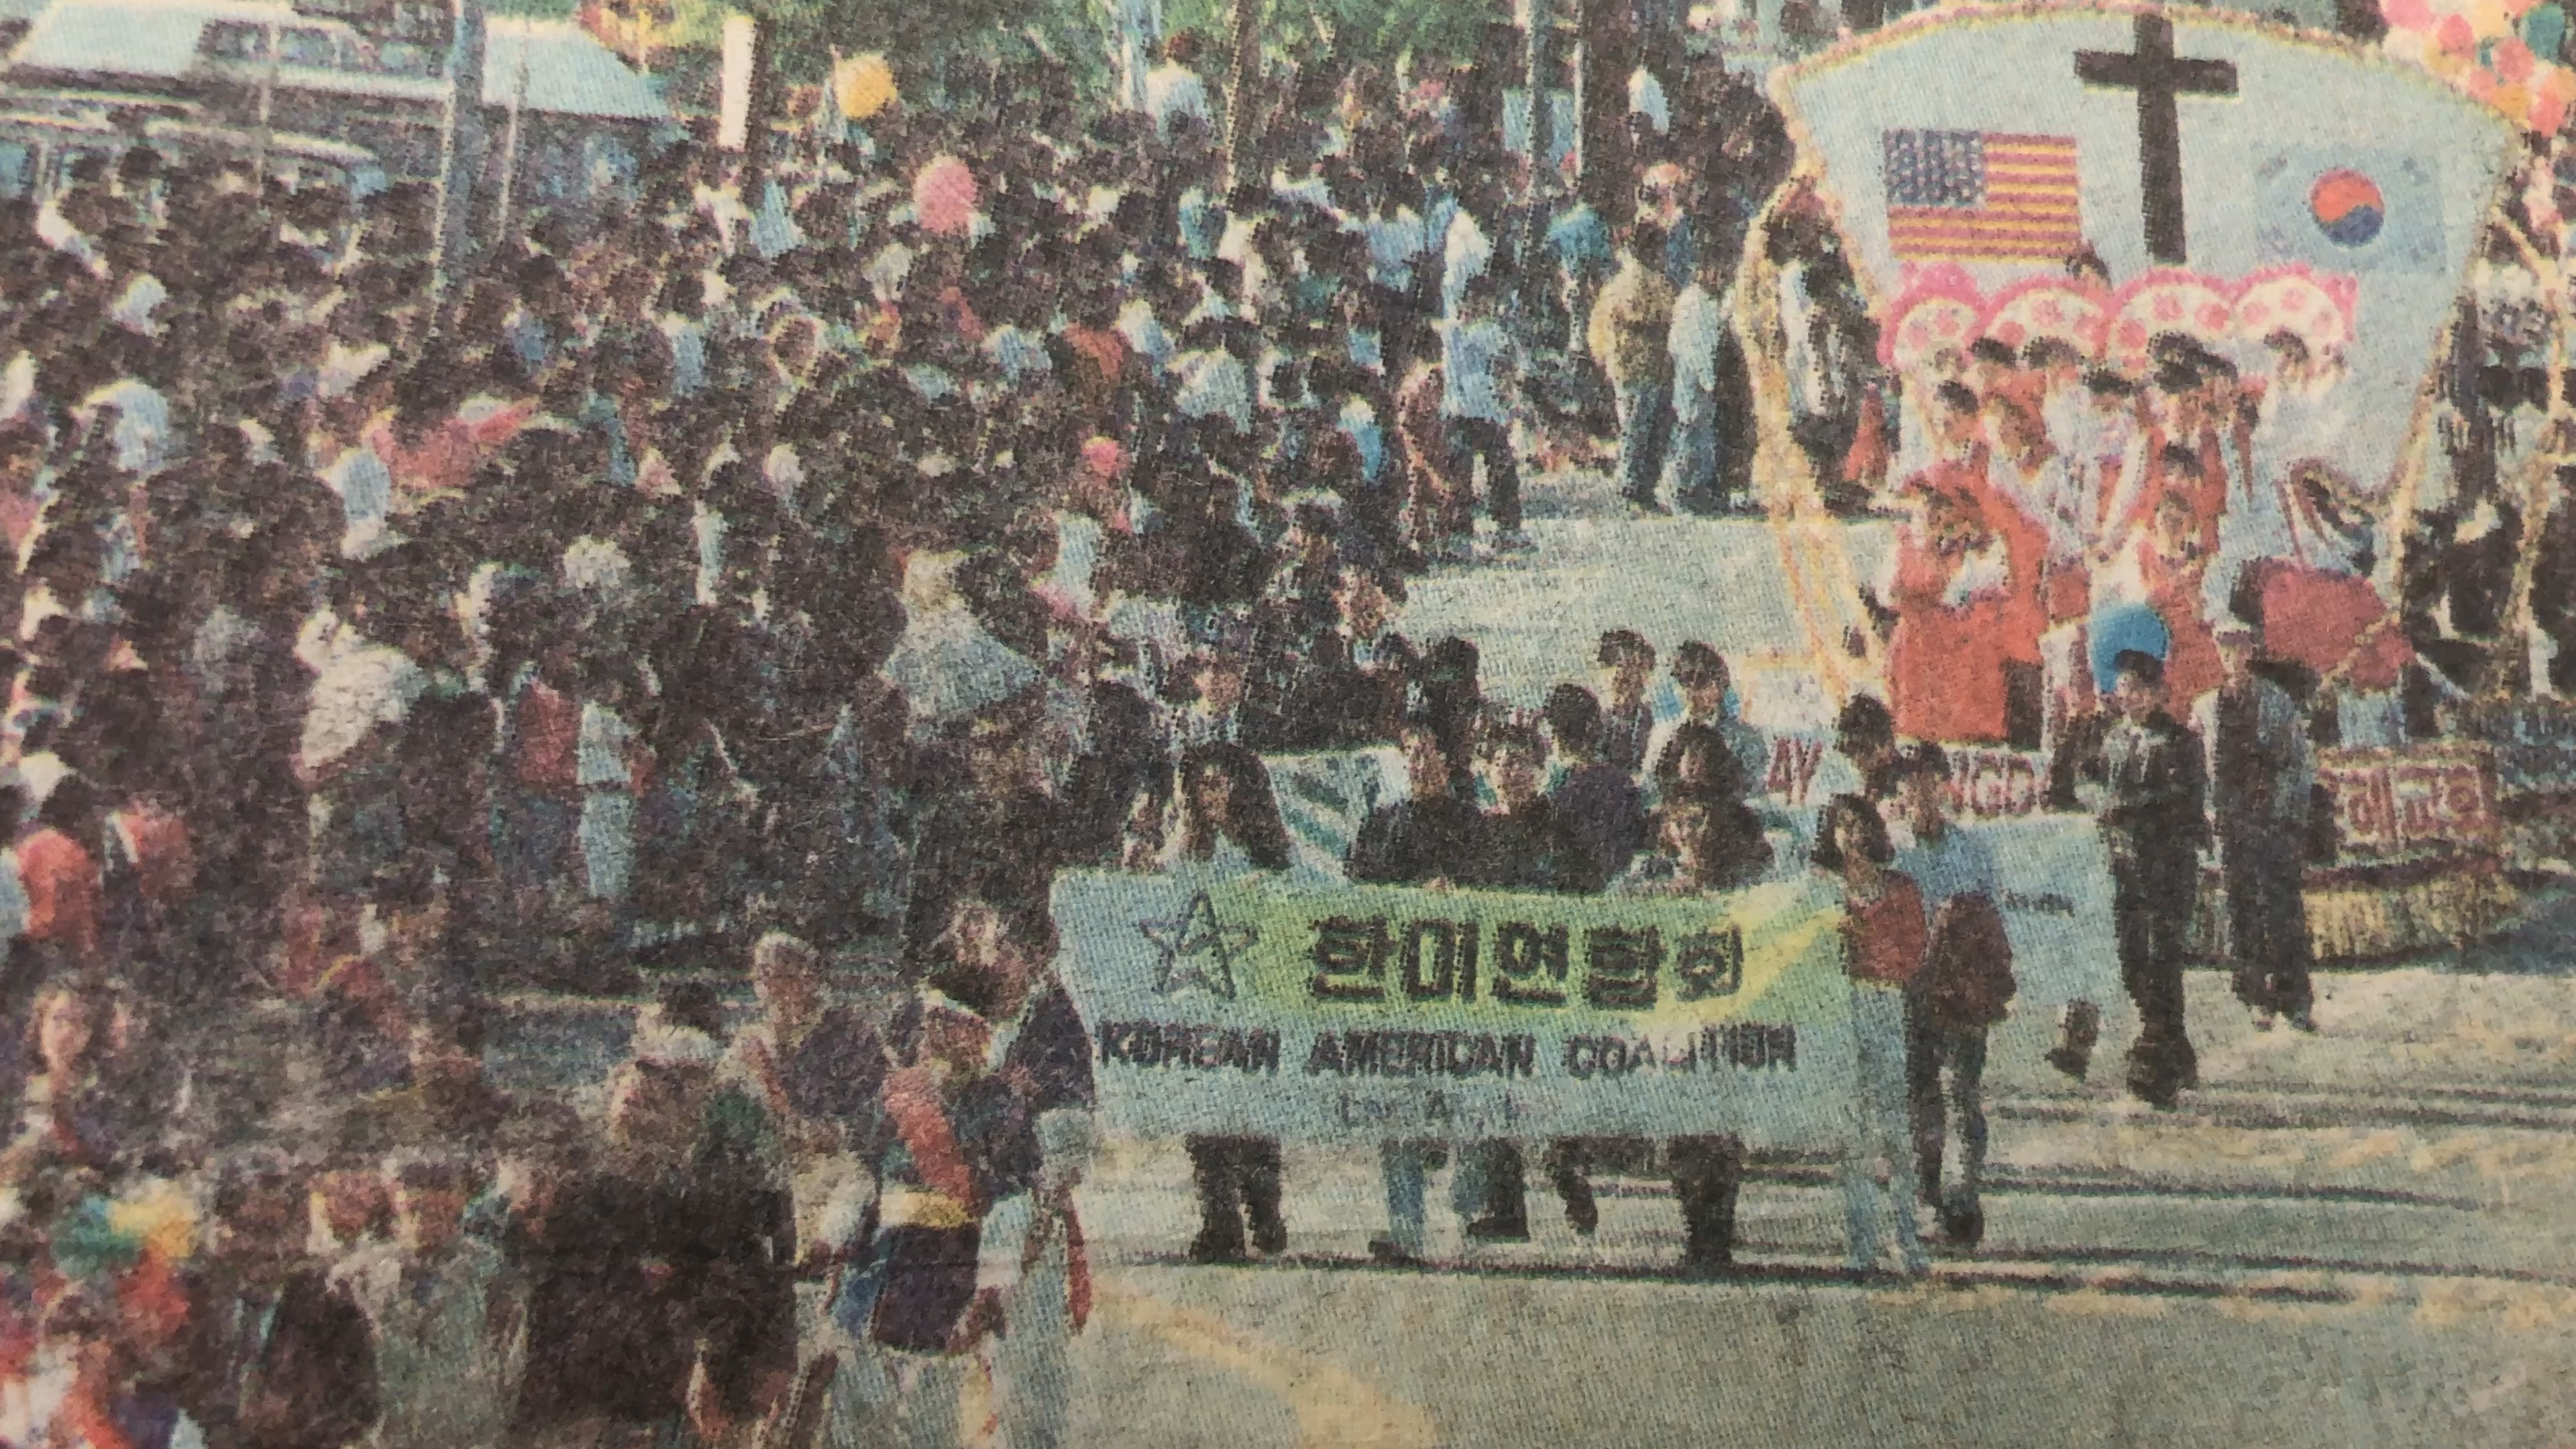 Korean American Coalition members marching.